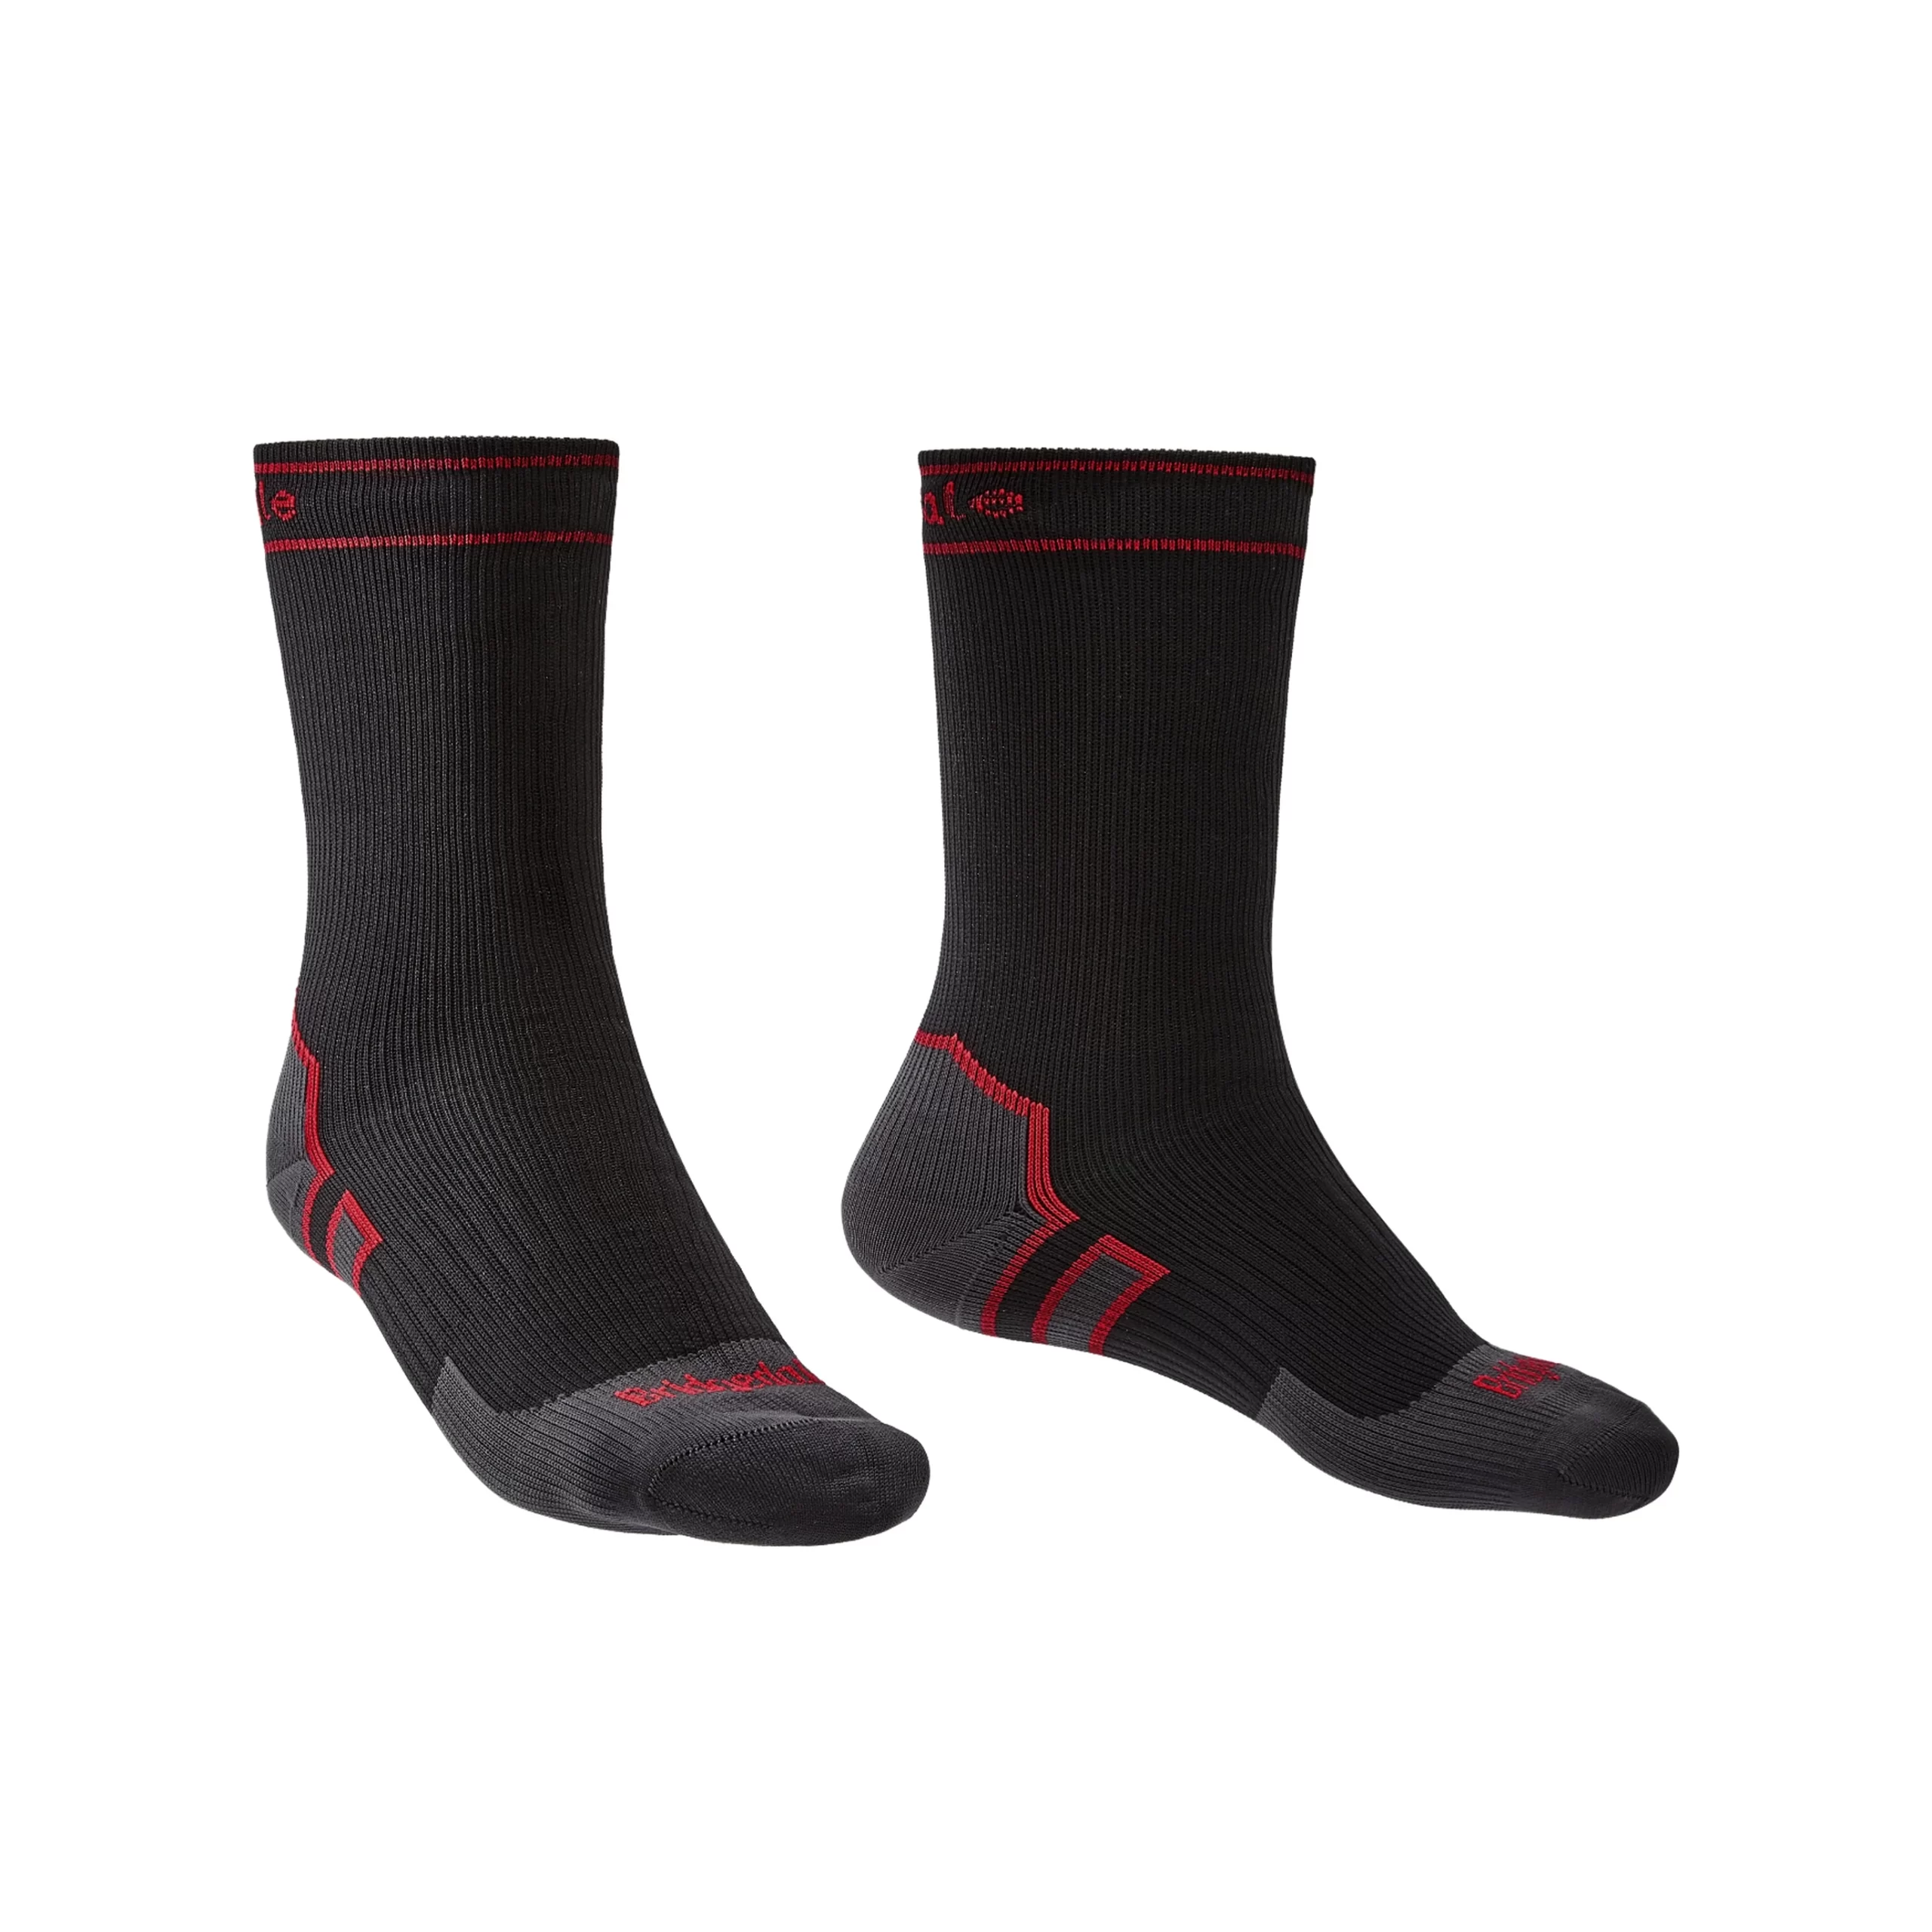 Bridgedale Storm Socks Heavyweight Waterproof Socks - Ironside Military